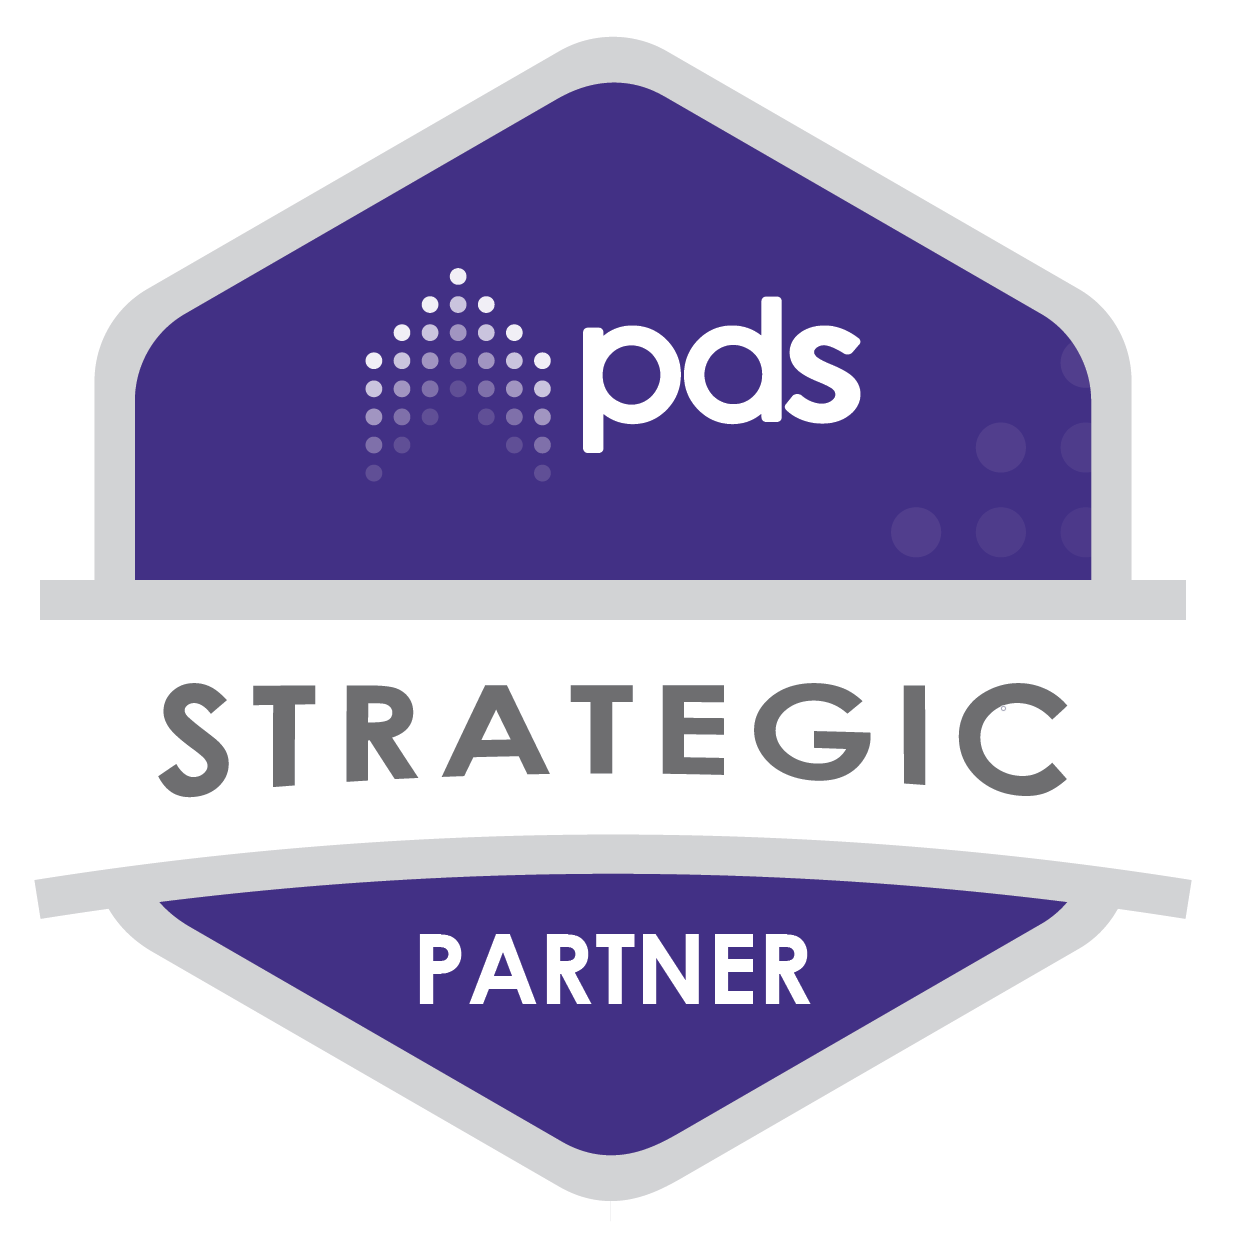 PDS strategic partner badge